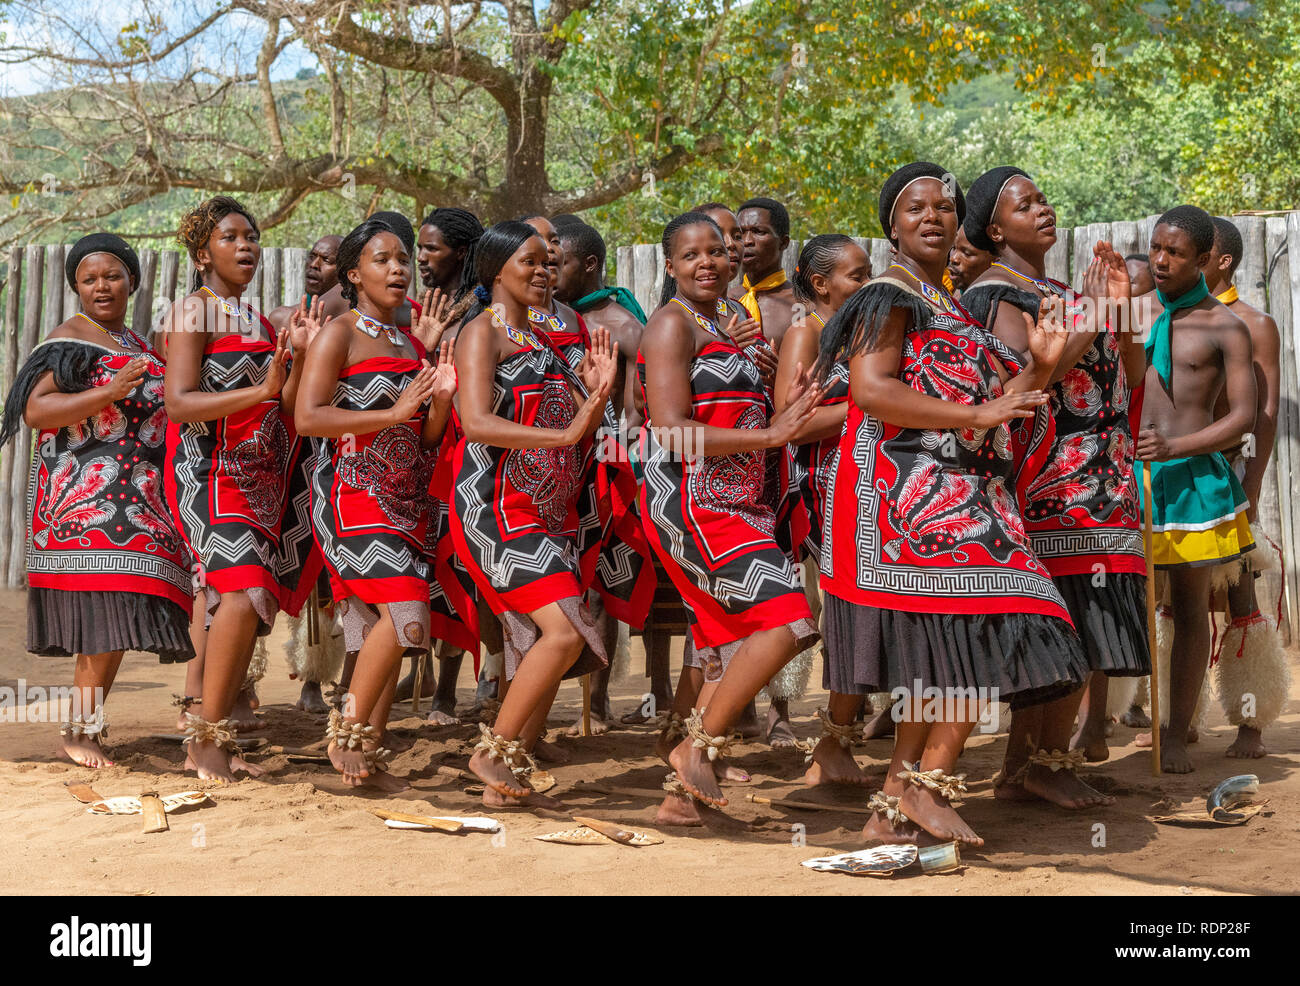 Traditionelle Swasidörfer tanzen Anzeige durch die Truppe an der Mantenga Cultural Village, Ezulwini Tal, eSwatini früher als Swasiland bekannt Stockfoto